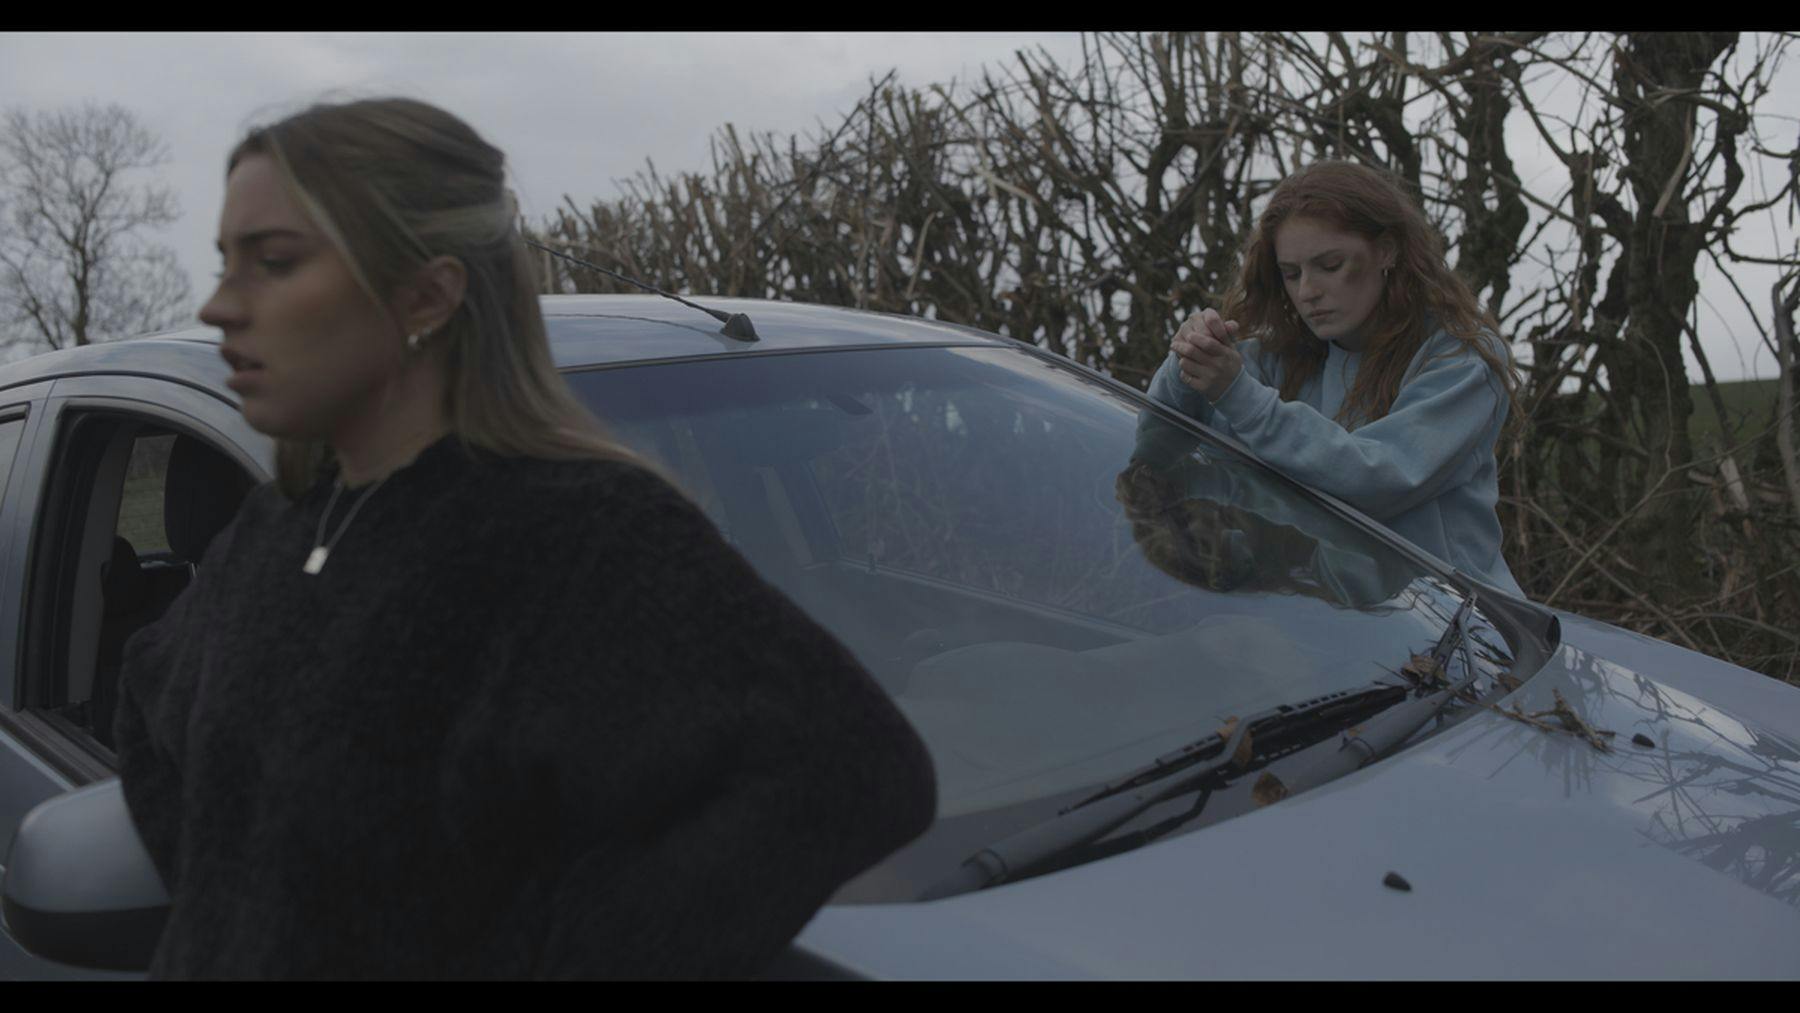 Film still from 'Crossroads' by Julia Tomaszewska